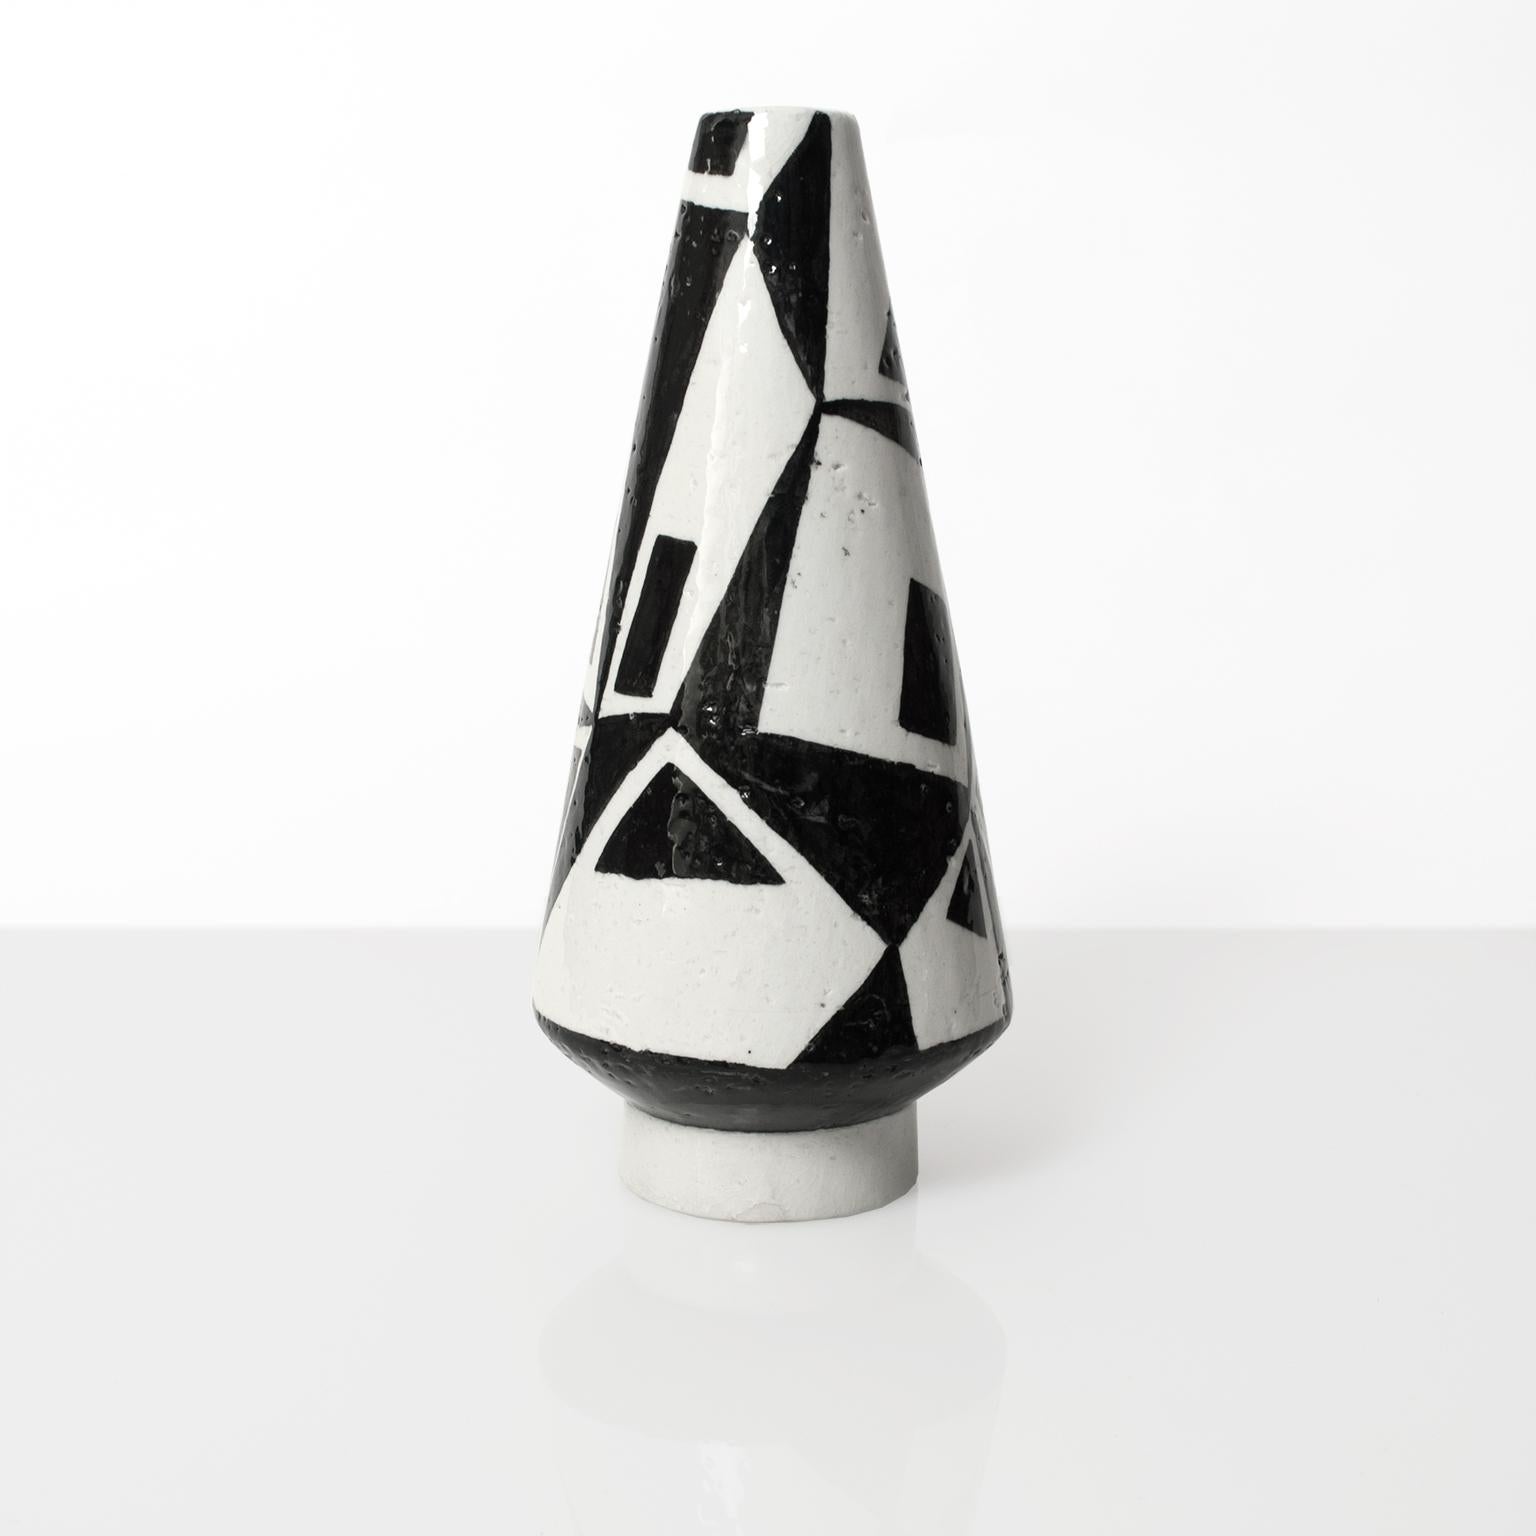 Scandinavian Modern Vilhelm Bjerke Petersen Vase for Rorstrand Studio, Signed 1954